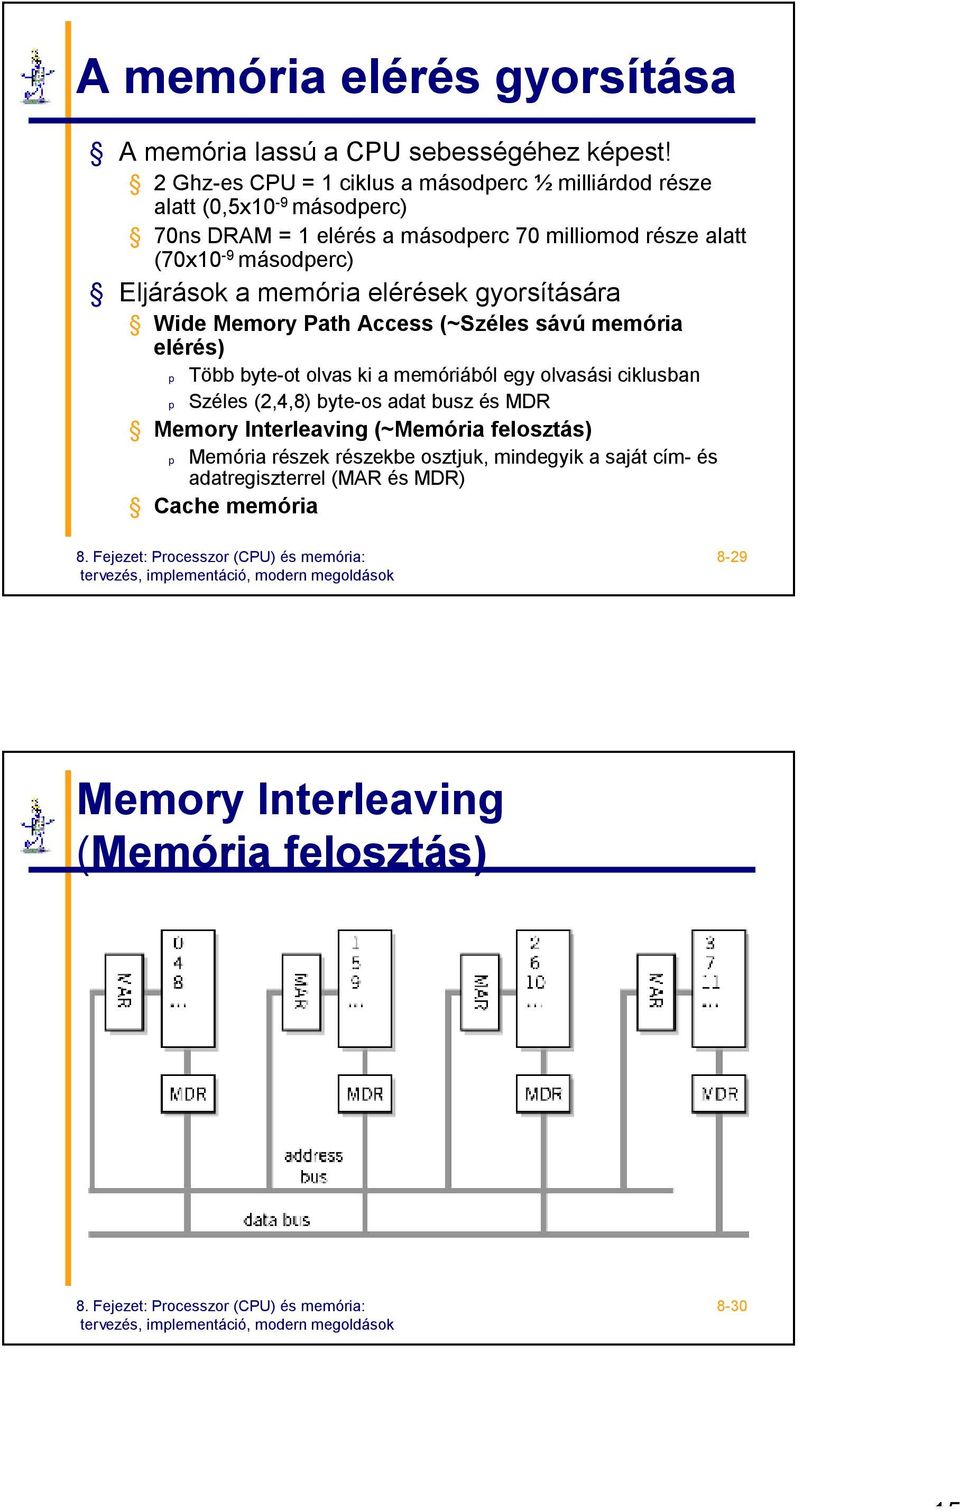 8. Fejezet Processzor (CPU) és memória: tervezés, implementáció, modern  megoldások - PDF Ingyenes letöltés